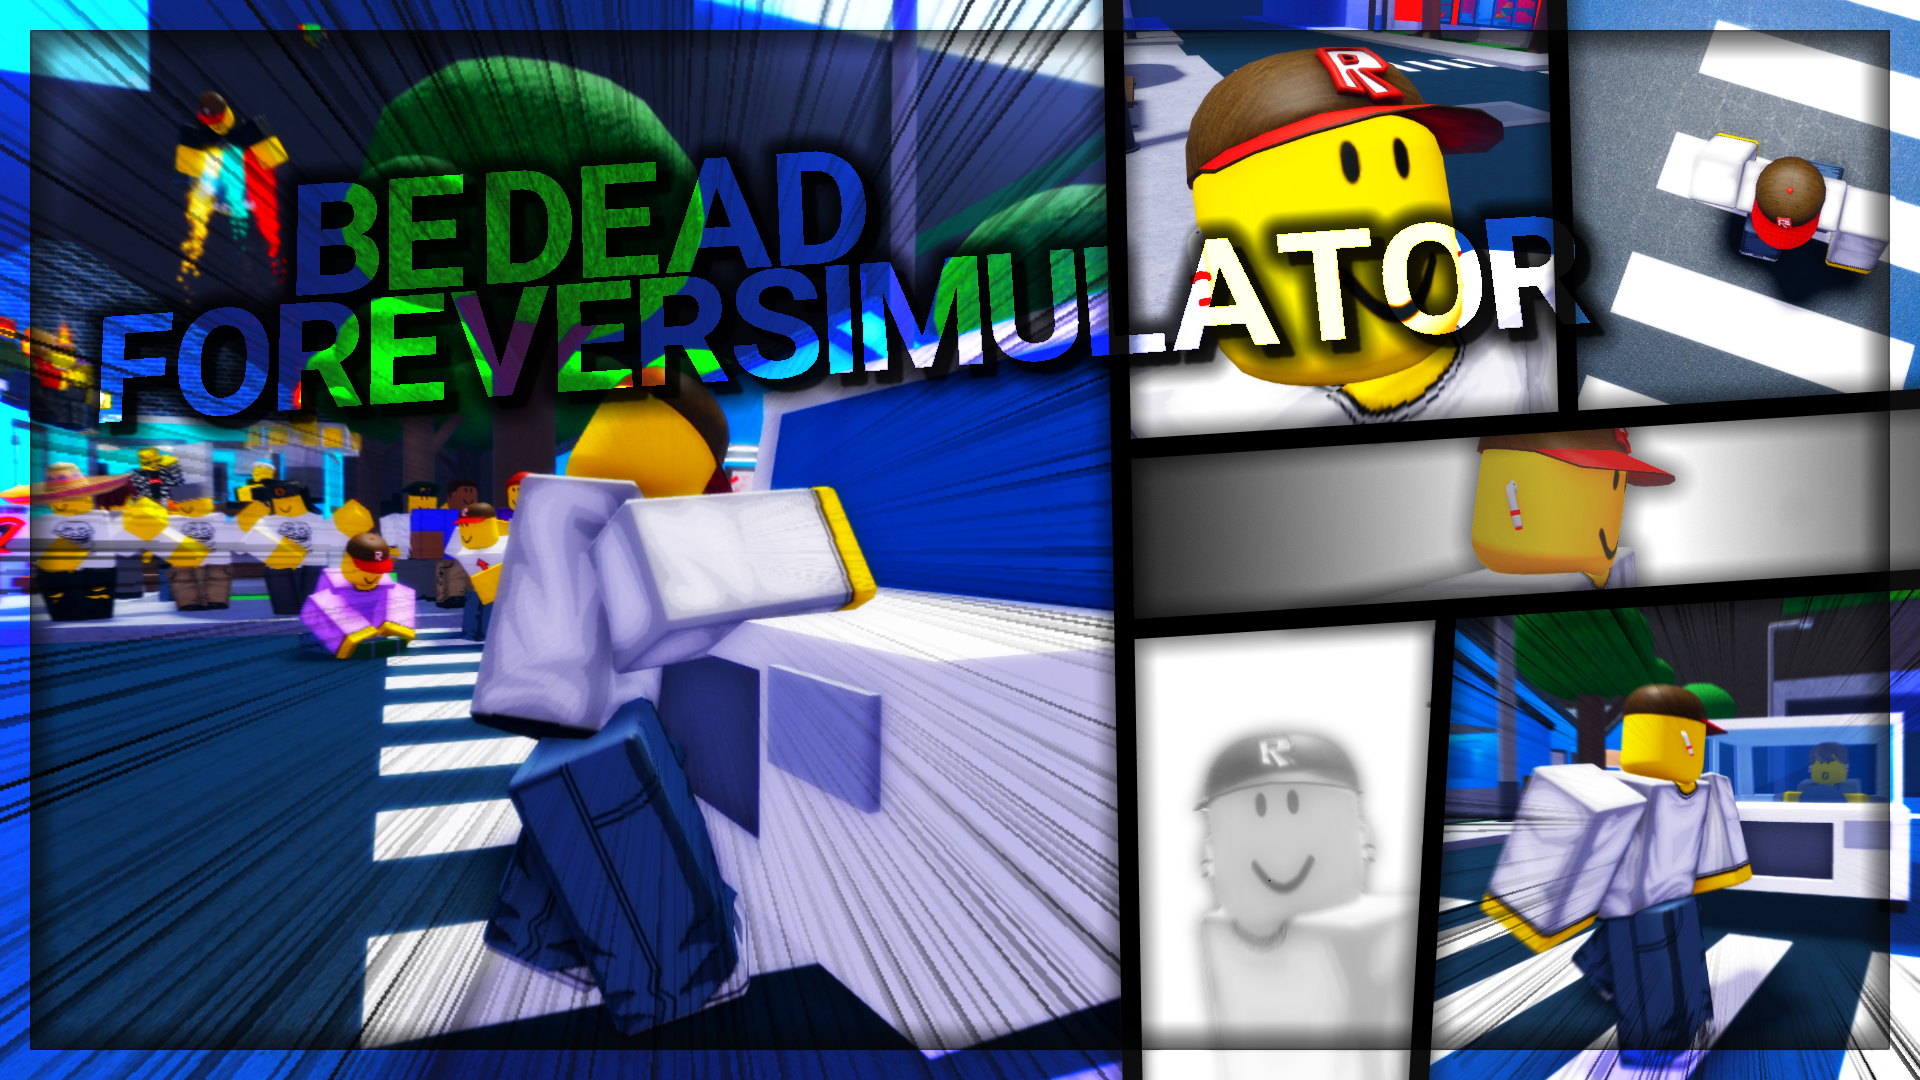 Be Dead Forever Simulator Roblox Wiki Fandom - catalog simulator roblox